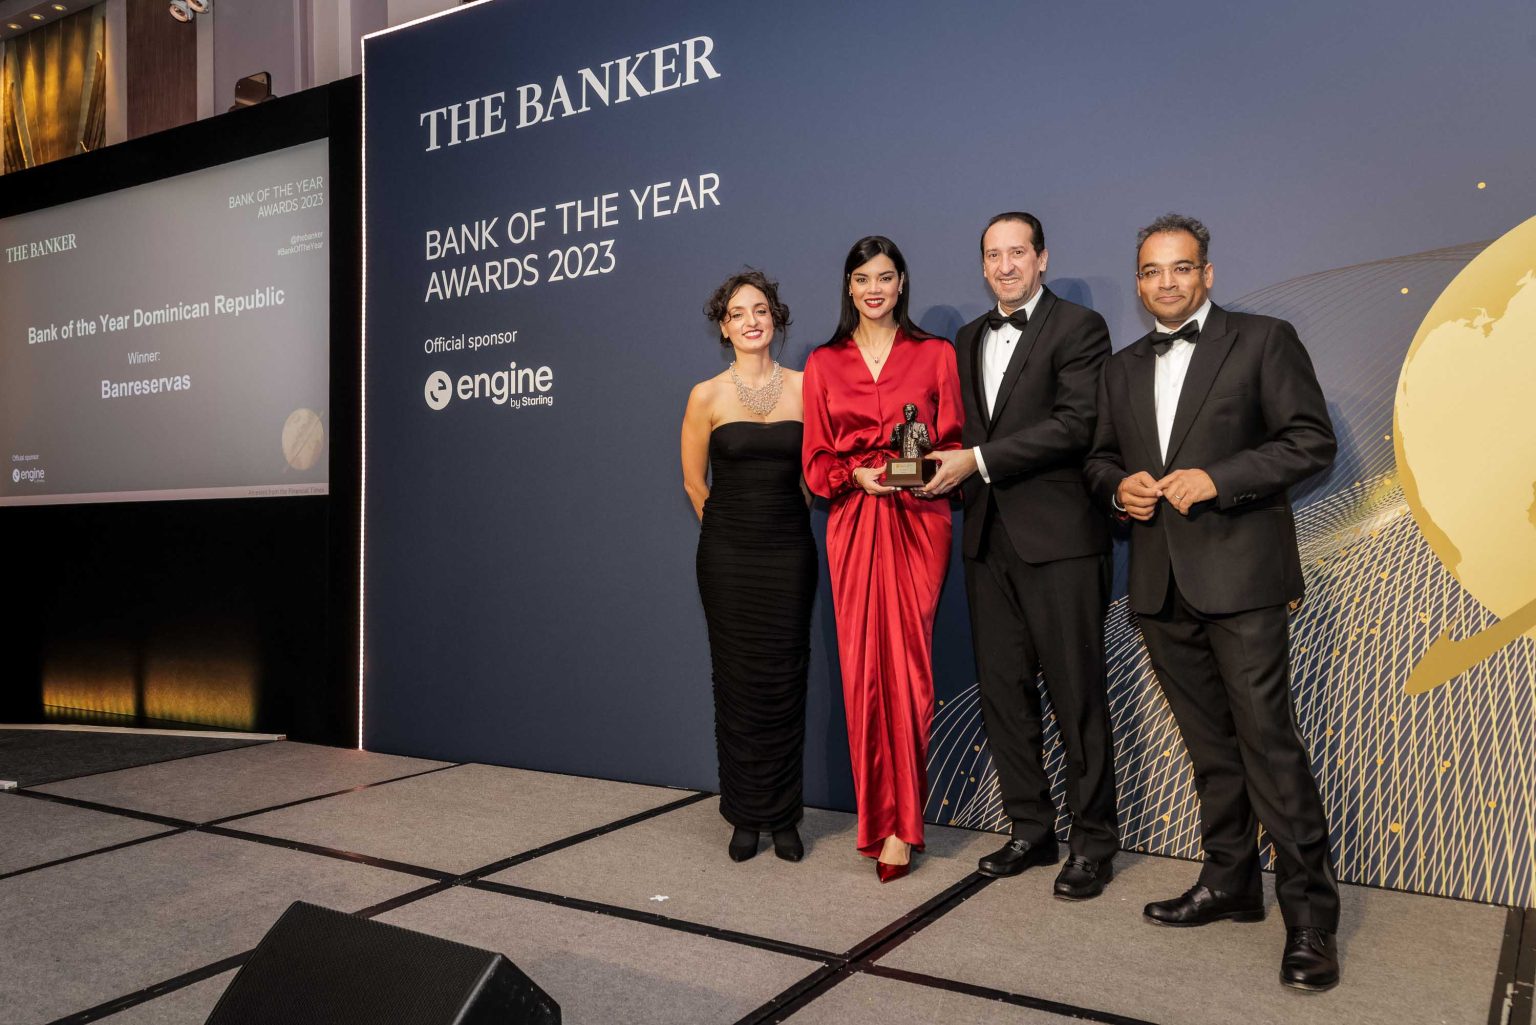 The Banker reconoce a Banreservas como Mejor Banco del Ano en RD 2023 para su acostumbrada difusion